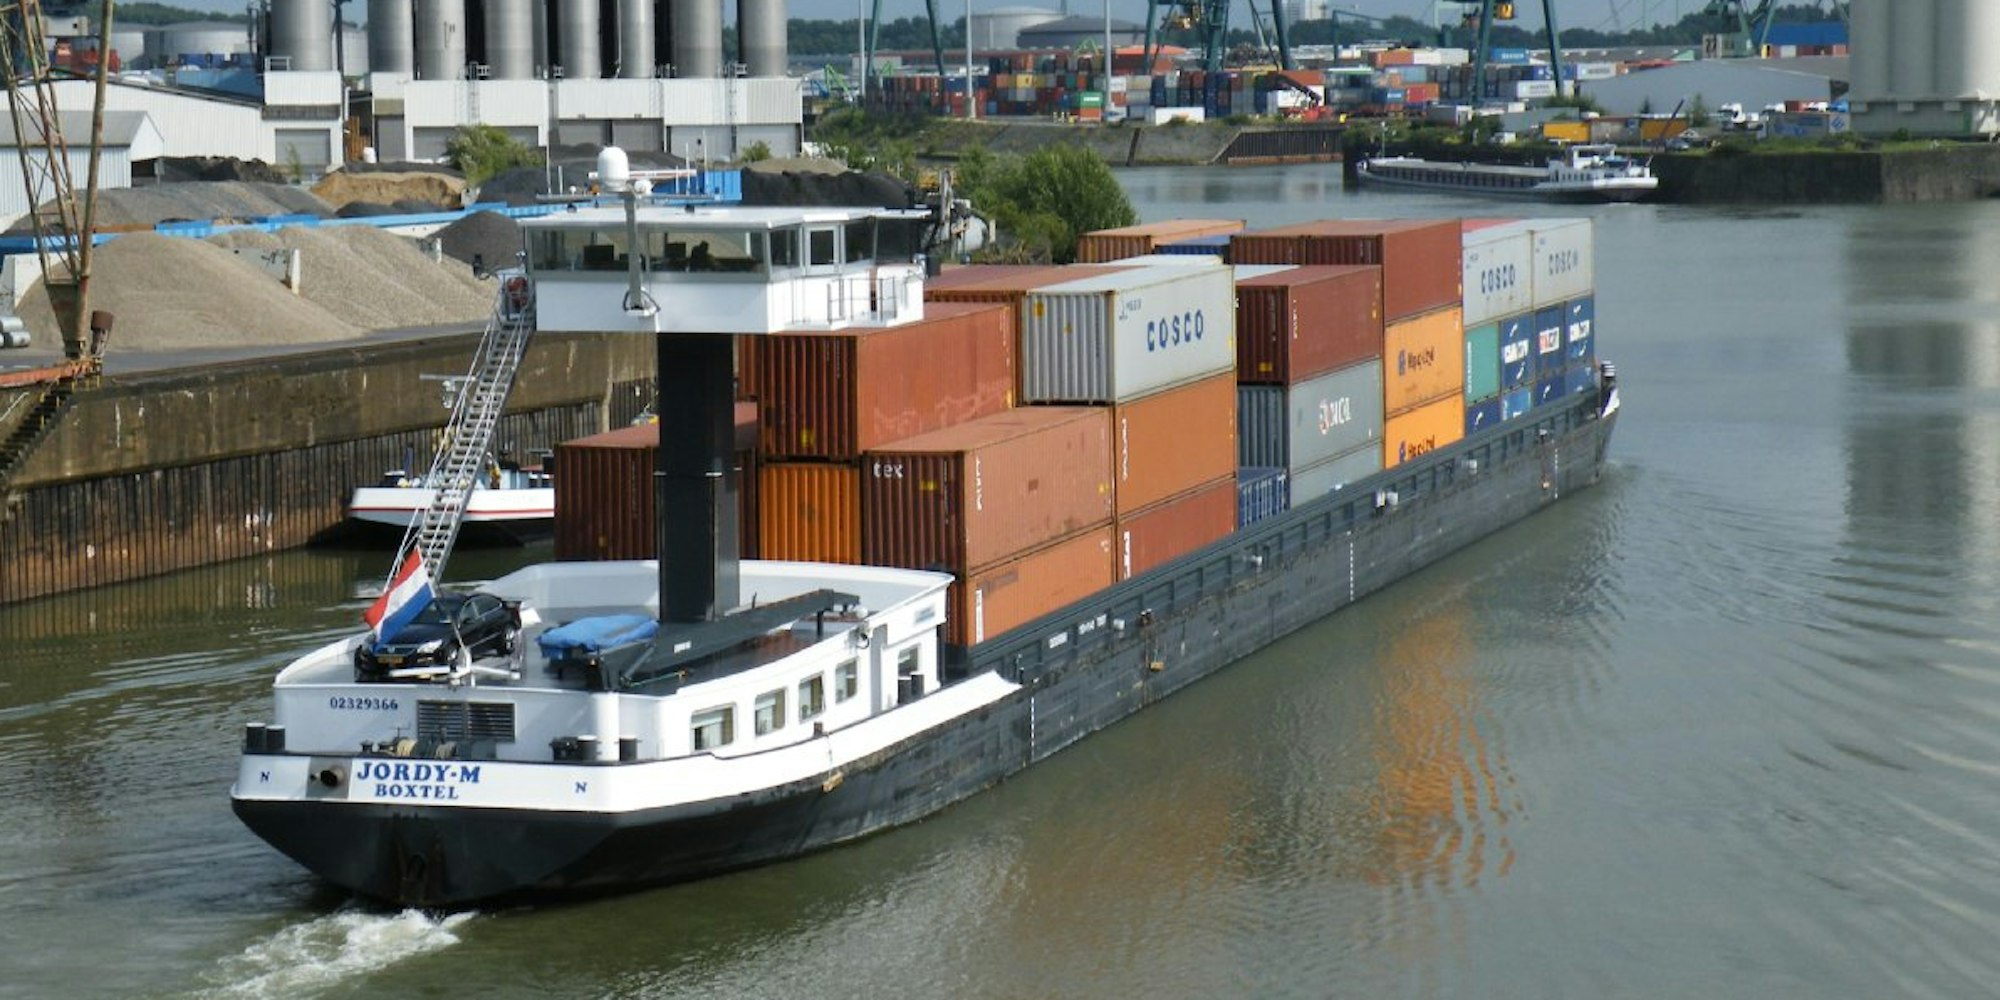 Impression aus dem Niehler Hafen: Ein holländisches Containerschiff steuert den Stapelkai samt Kranbrücke an.